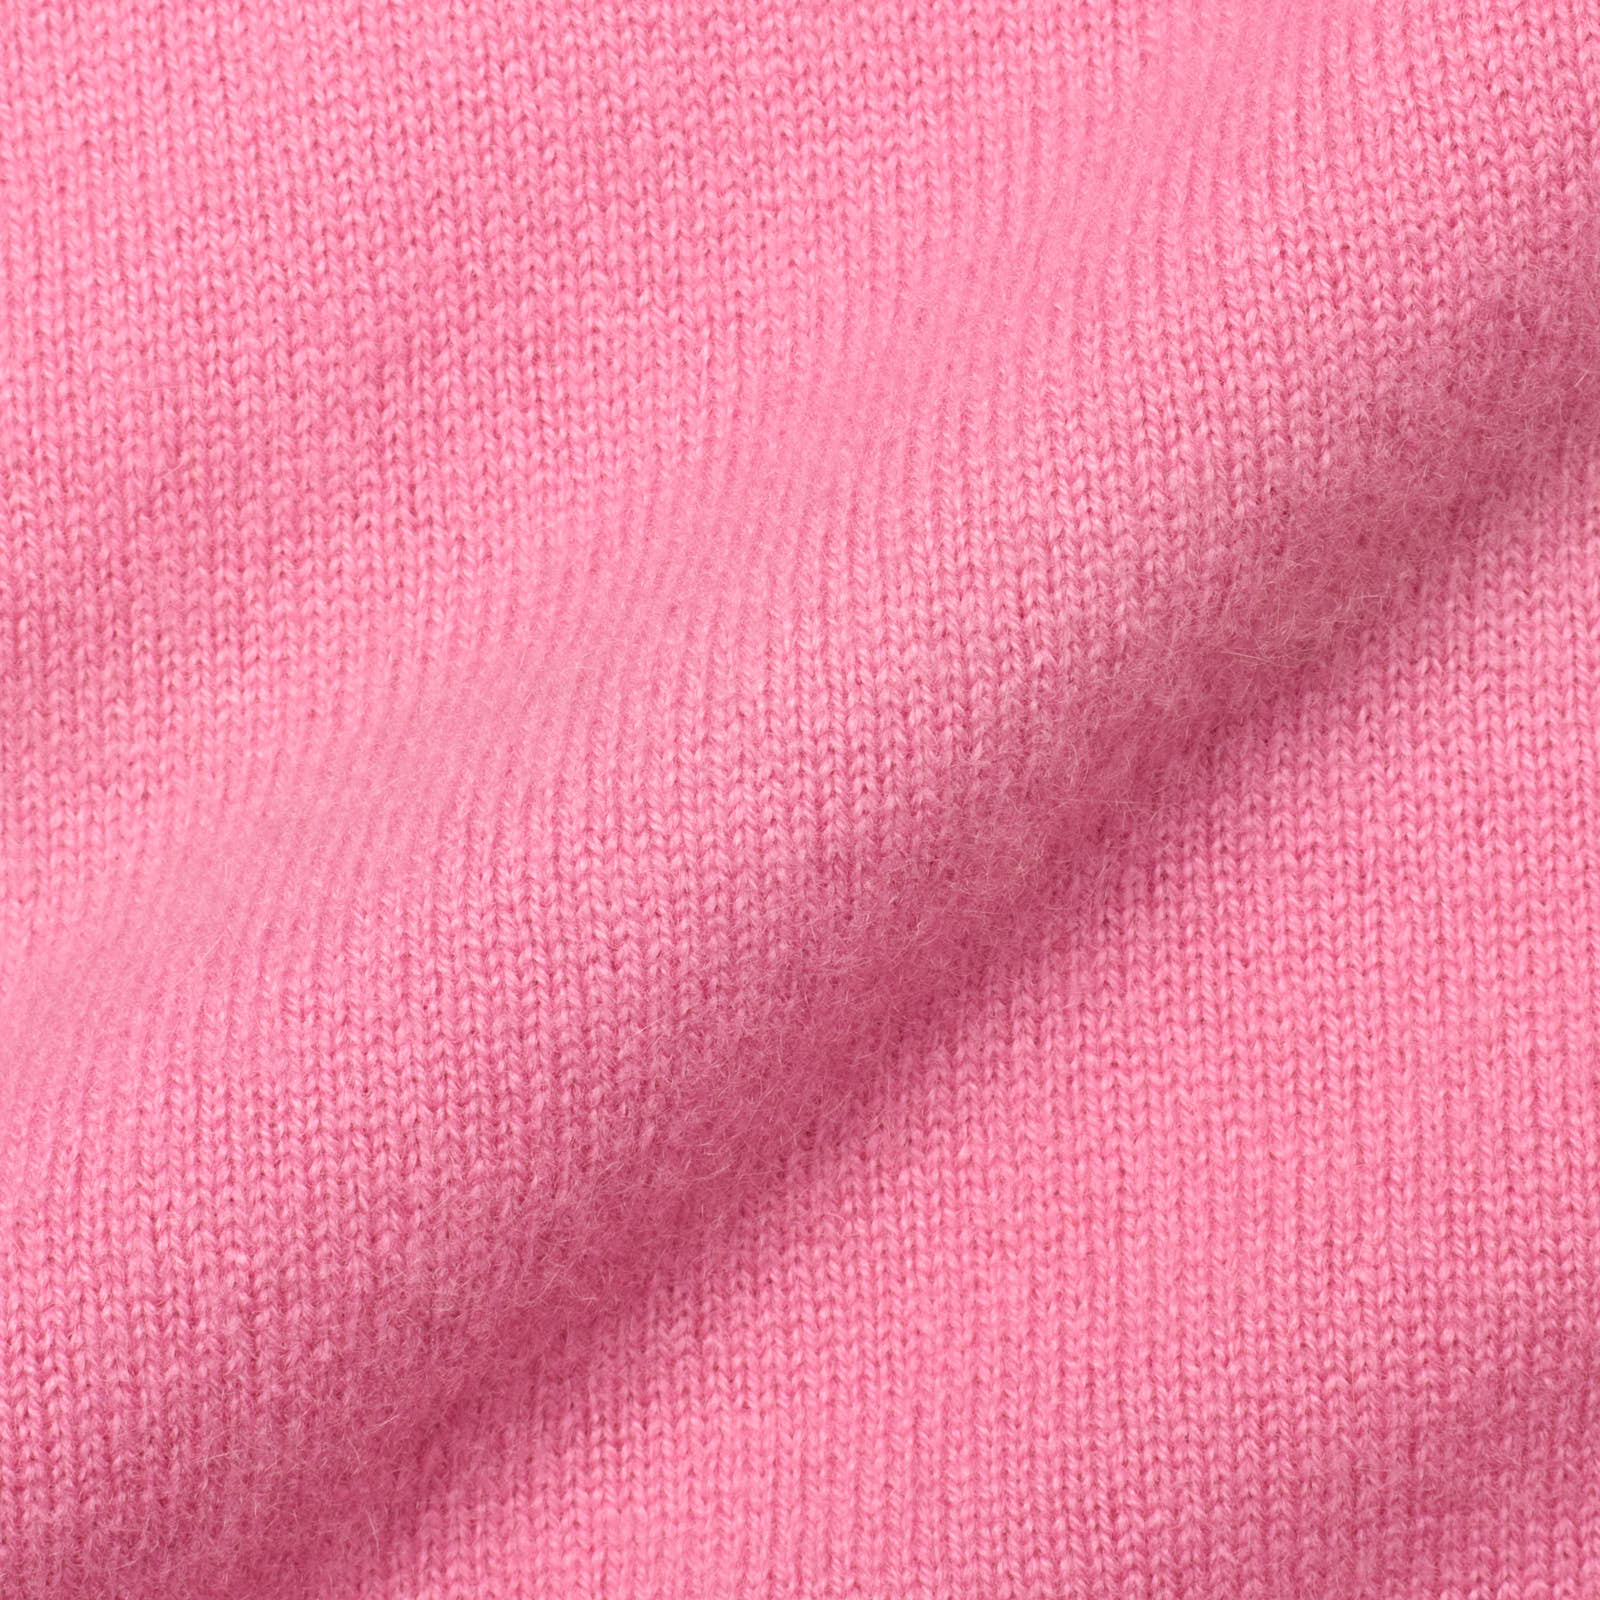 DELLA CIANA for VANNUCCI Pink Cashmere Knit Sweater Vest EU 46 NEW US XS